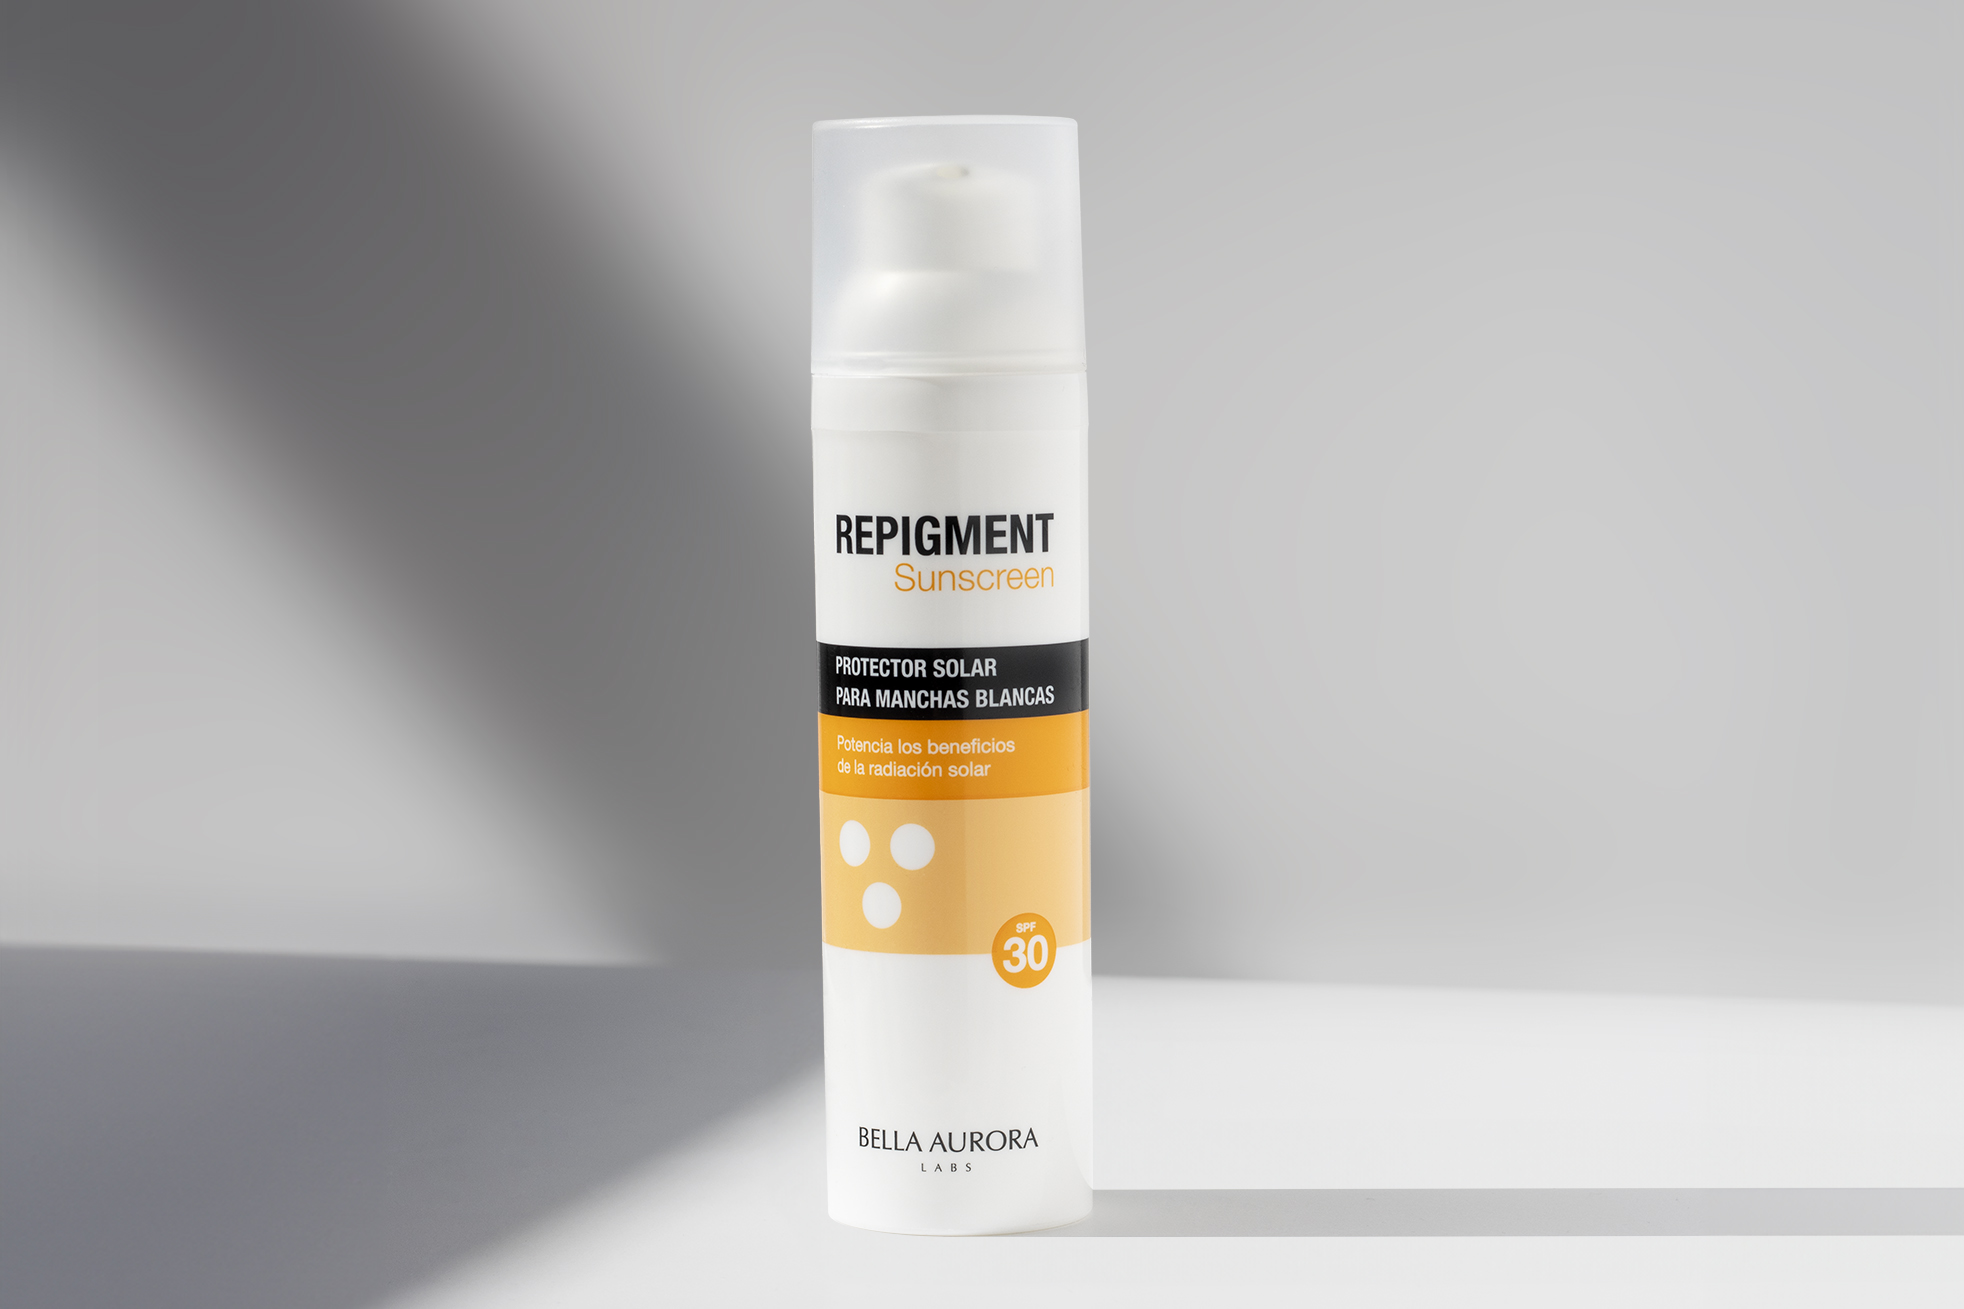 Repigment Sunscreen, el fotoprotector para pieles hipopigmentadas